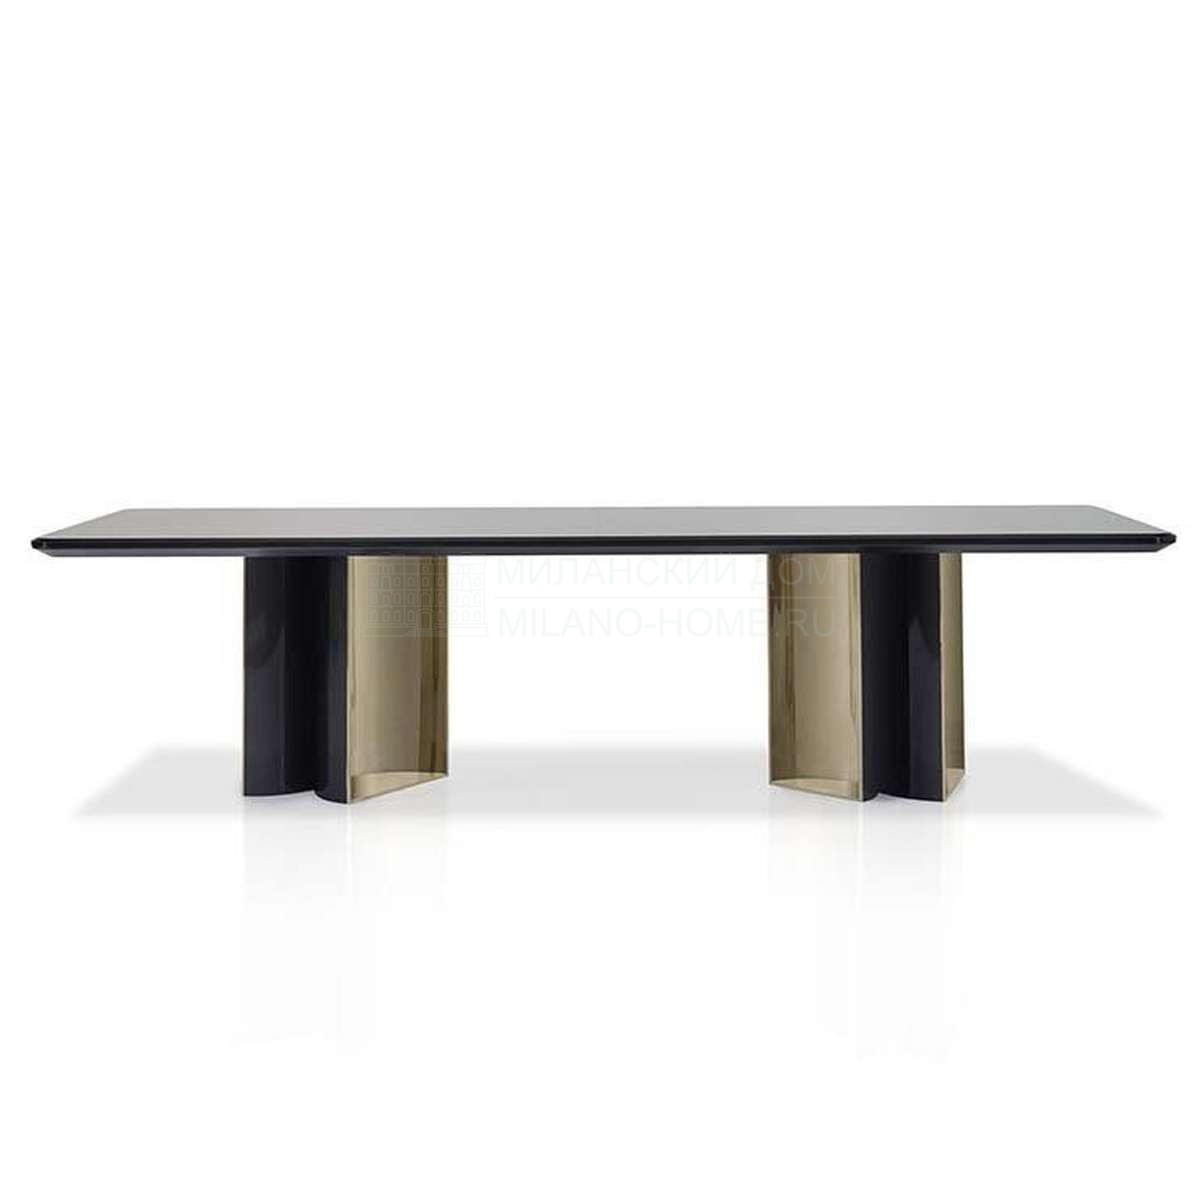 Обеденный стол Pavillion dining table из Италии фабрики FENDI Casa